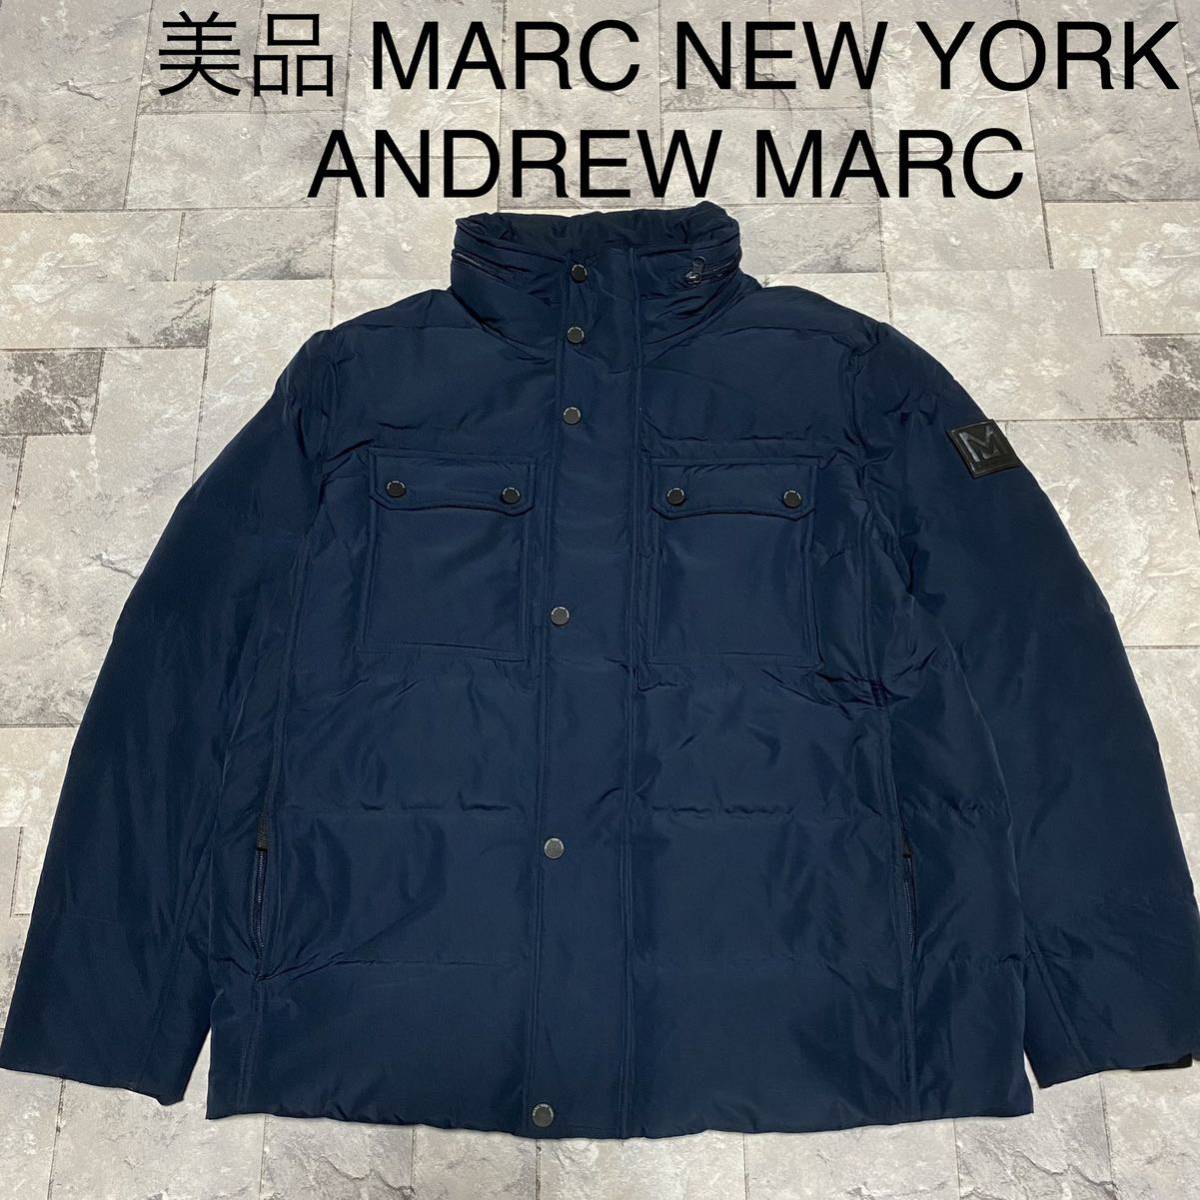 美品 MARC NEW YORK ANDREW MARC アンドリュー マーク ダウンジャケット フード収納 ブルー サイズL 玉FS1059